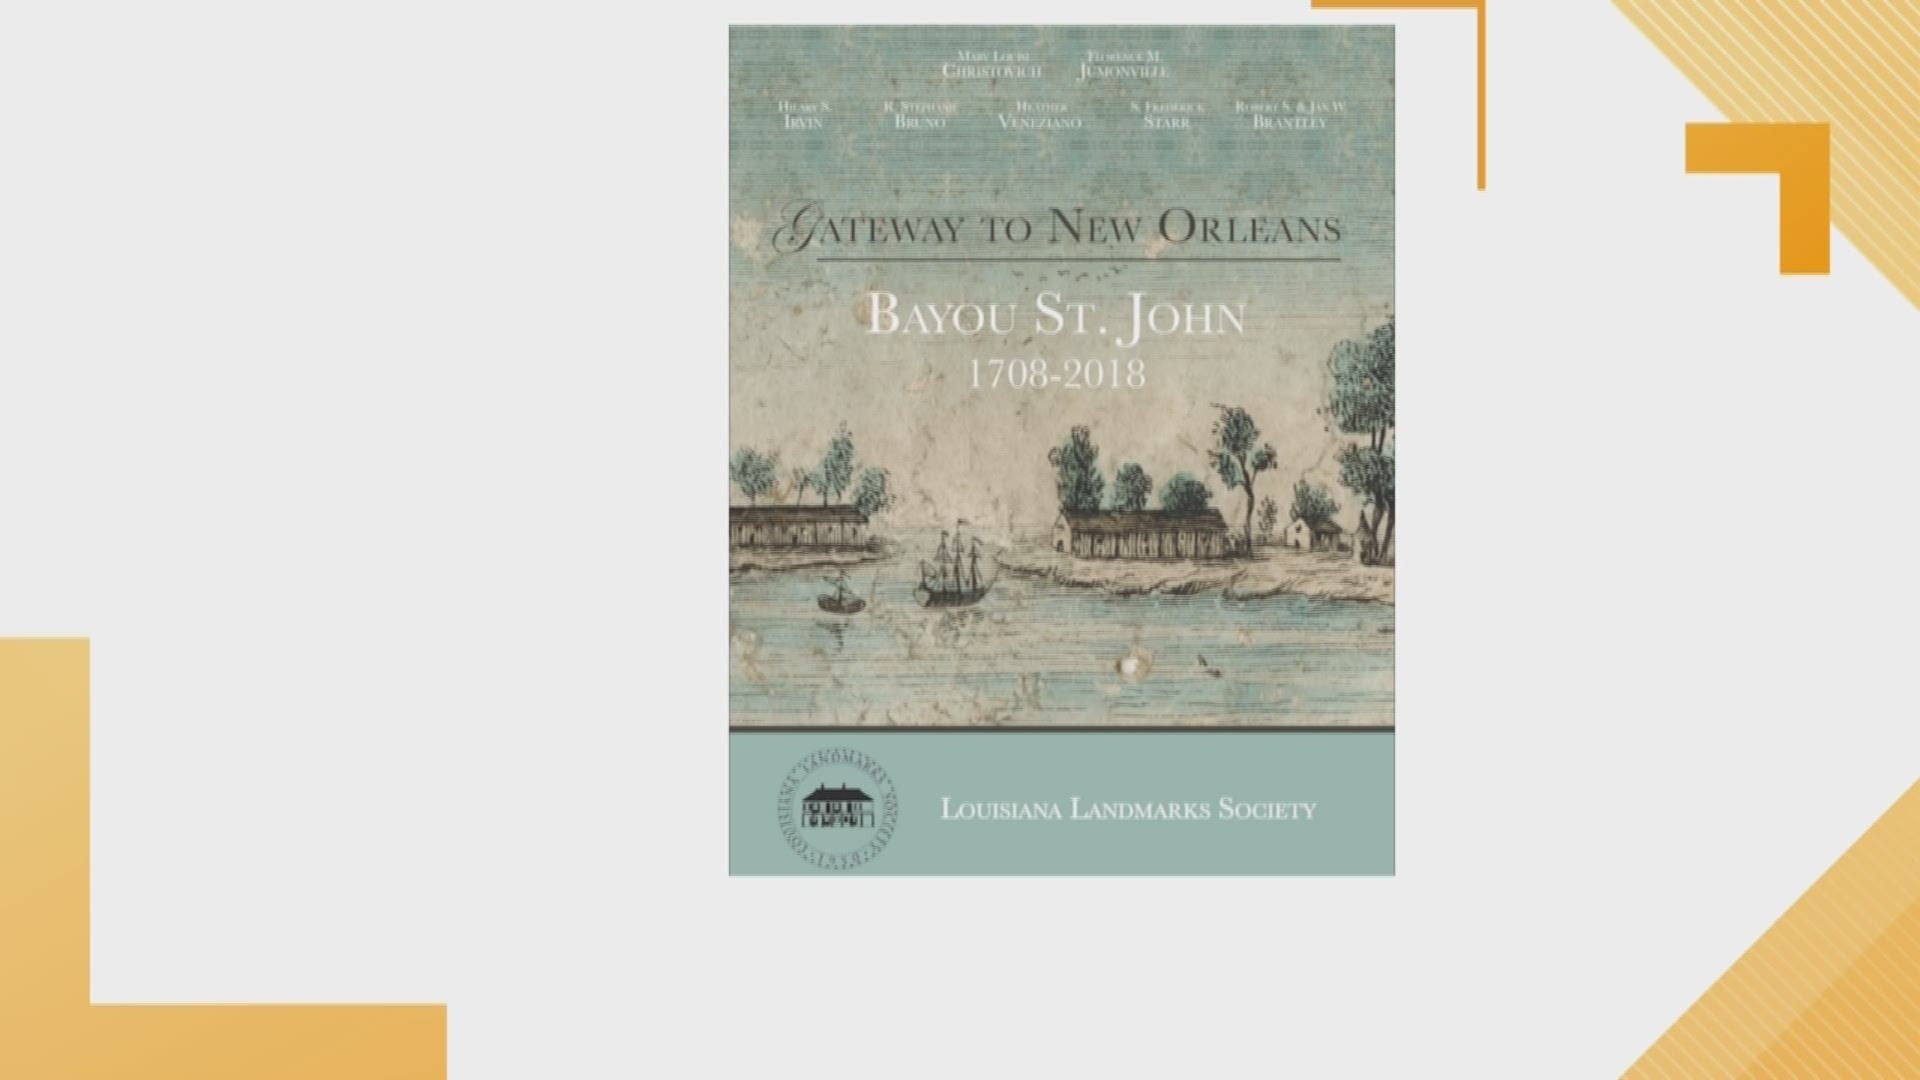 Member of the Louisiana Landmark Society, Hilary Irvin, is explaining the history behind the book.